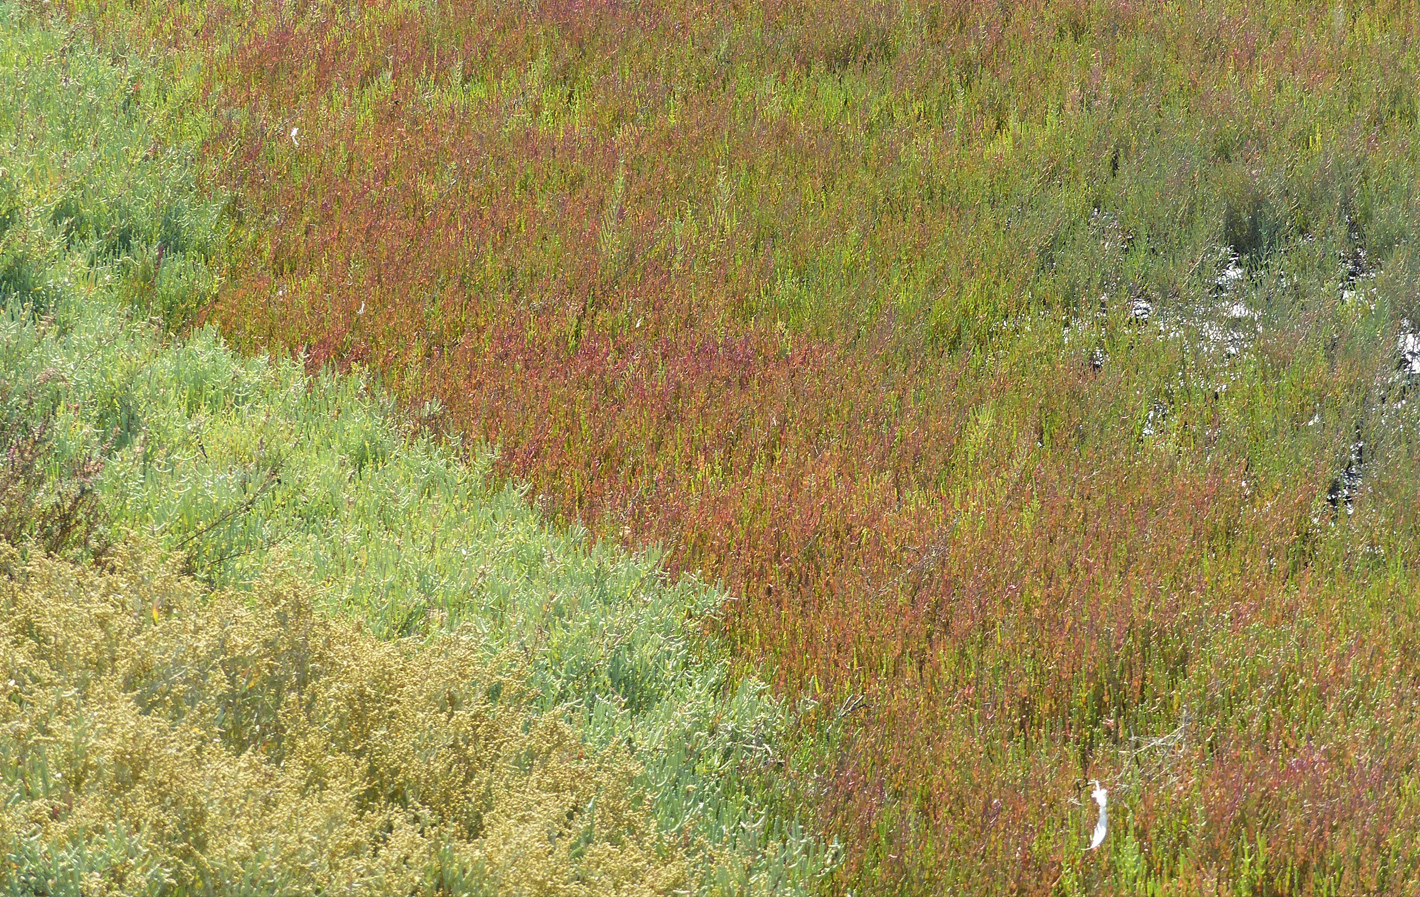 Vegetación de la marisma, de tonos verdes y rojizos propios de las halófitas.